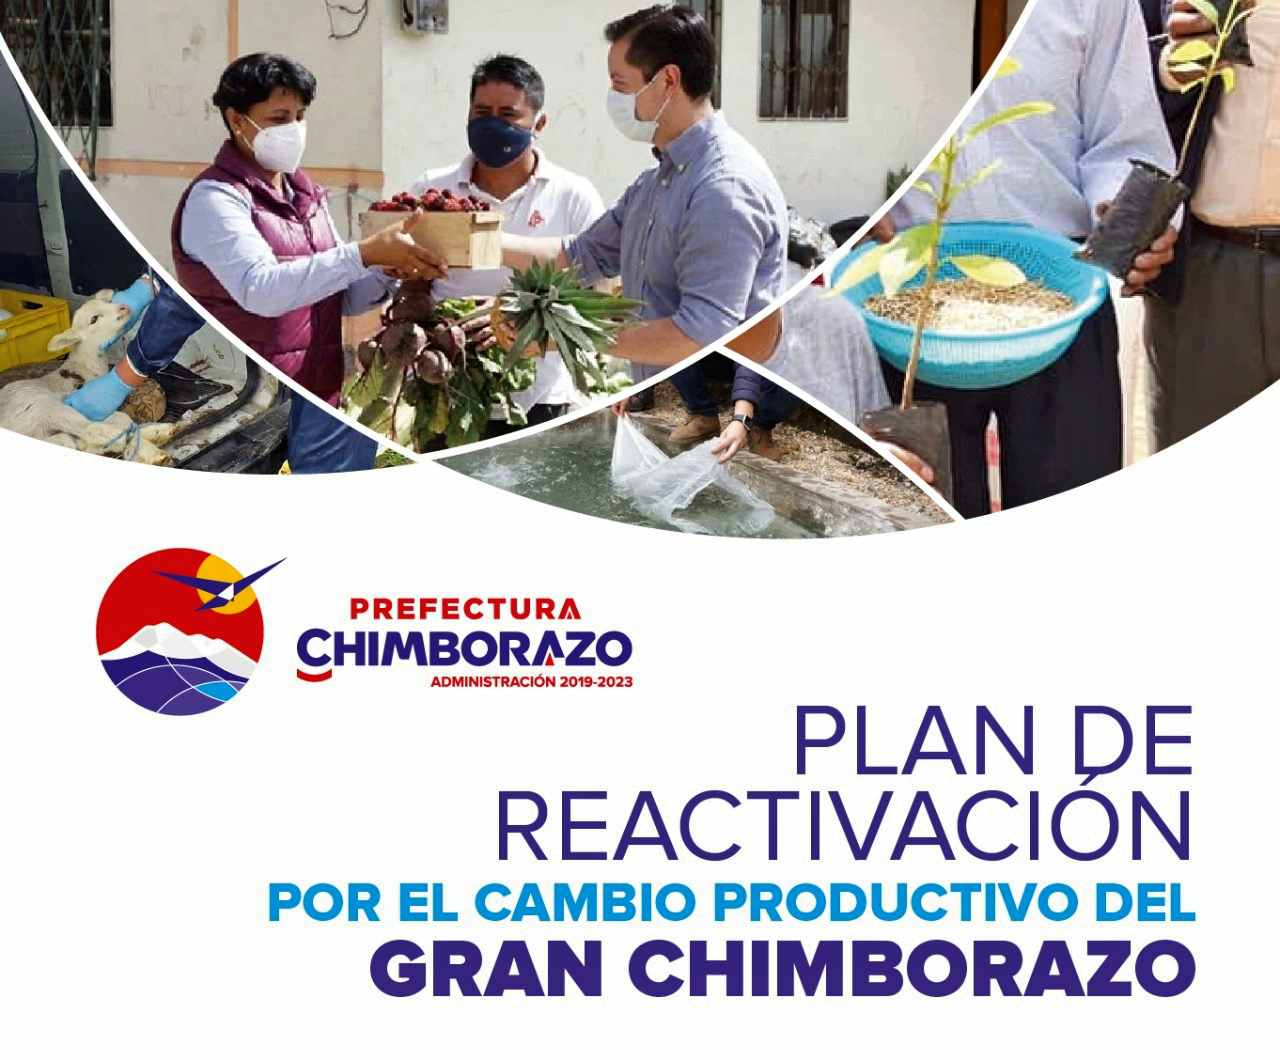 La Prefectura presenta el “Plan de Reactivación por el Cambio Productivo del Gran Chimborazo”